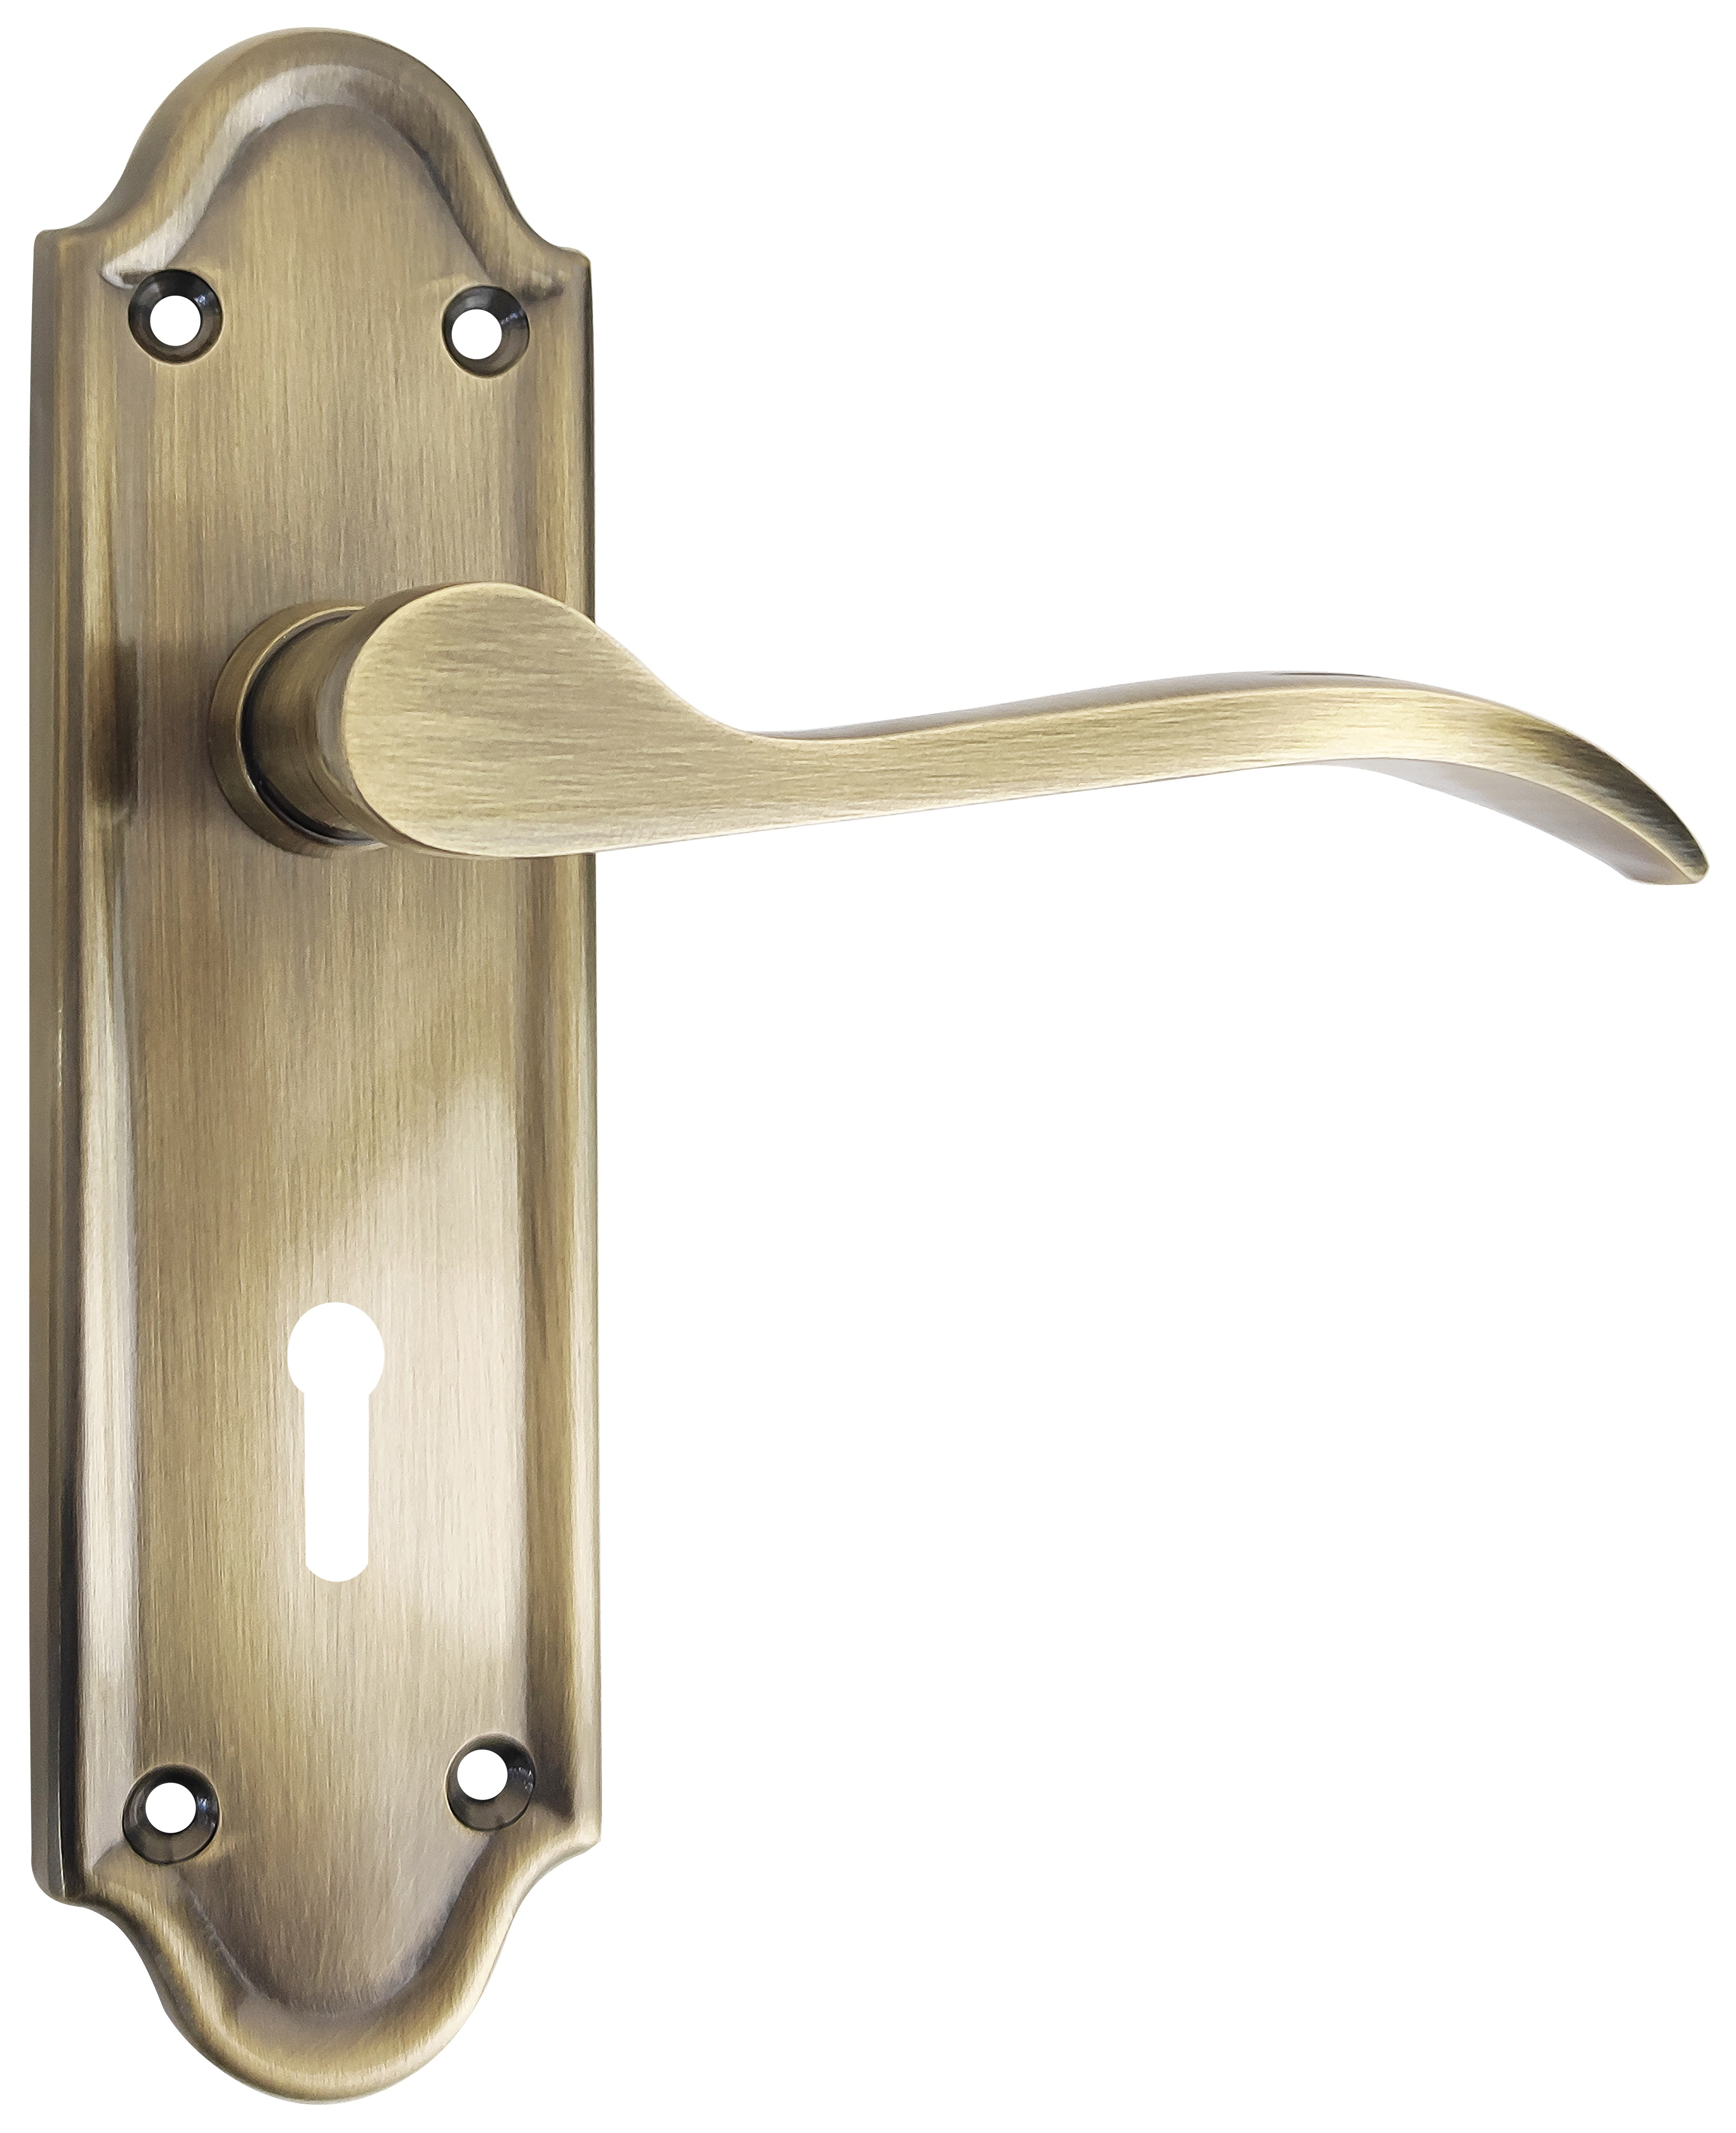 Kennington Antique Brass Lever Lock Door Handle - 1 Pair